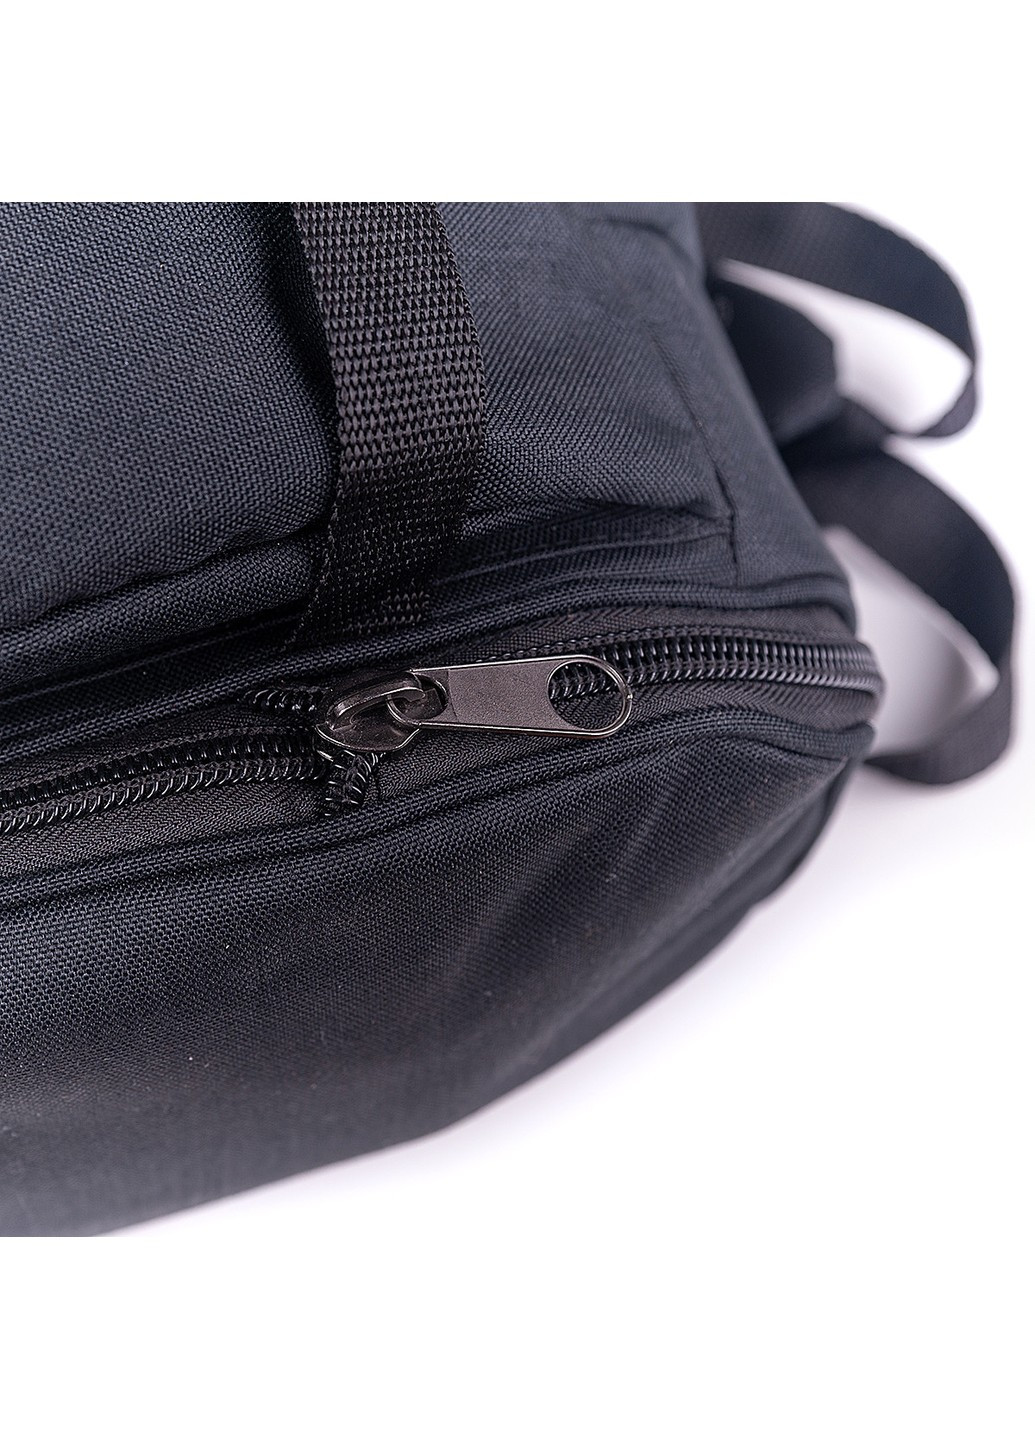 Рюкзак мужской черного цвета трансформер с раскладным дном водонепроницаемый туристический No Brand (258591268)